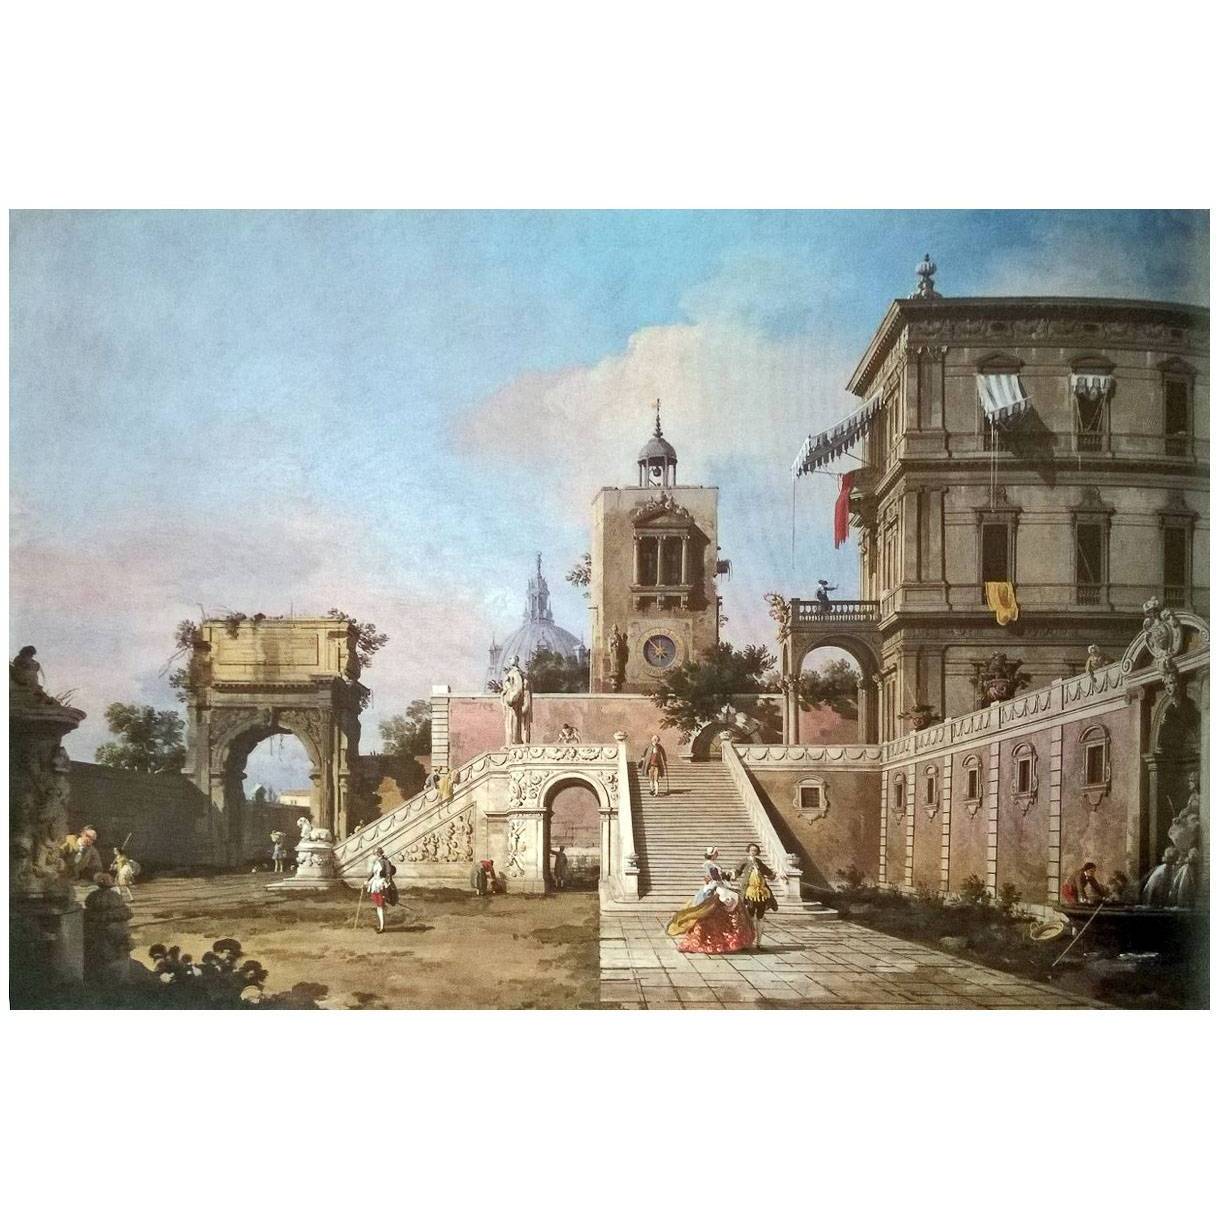 Canaletto. Capriccio di palazzo rinascimentale. 1753-1755. Arundel Castle